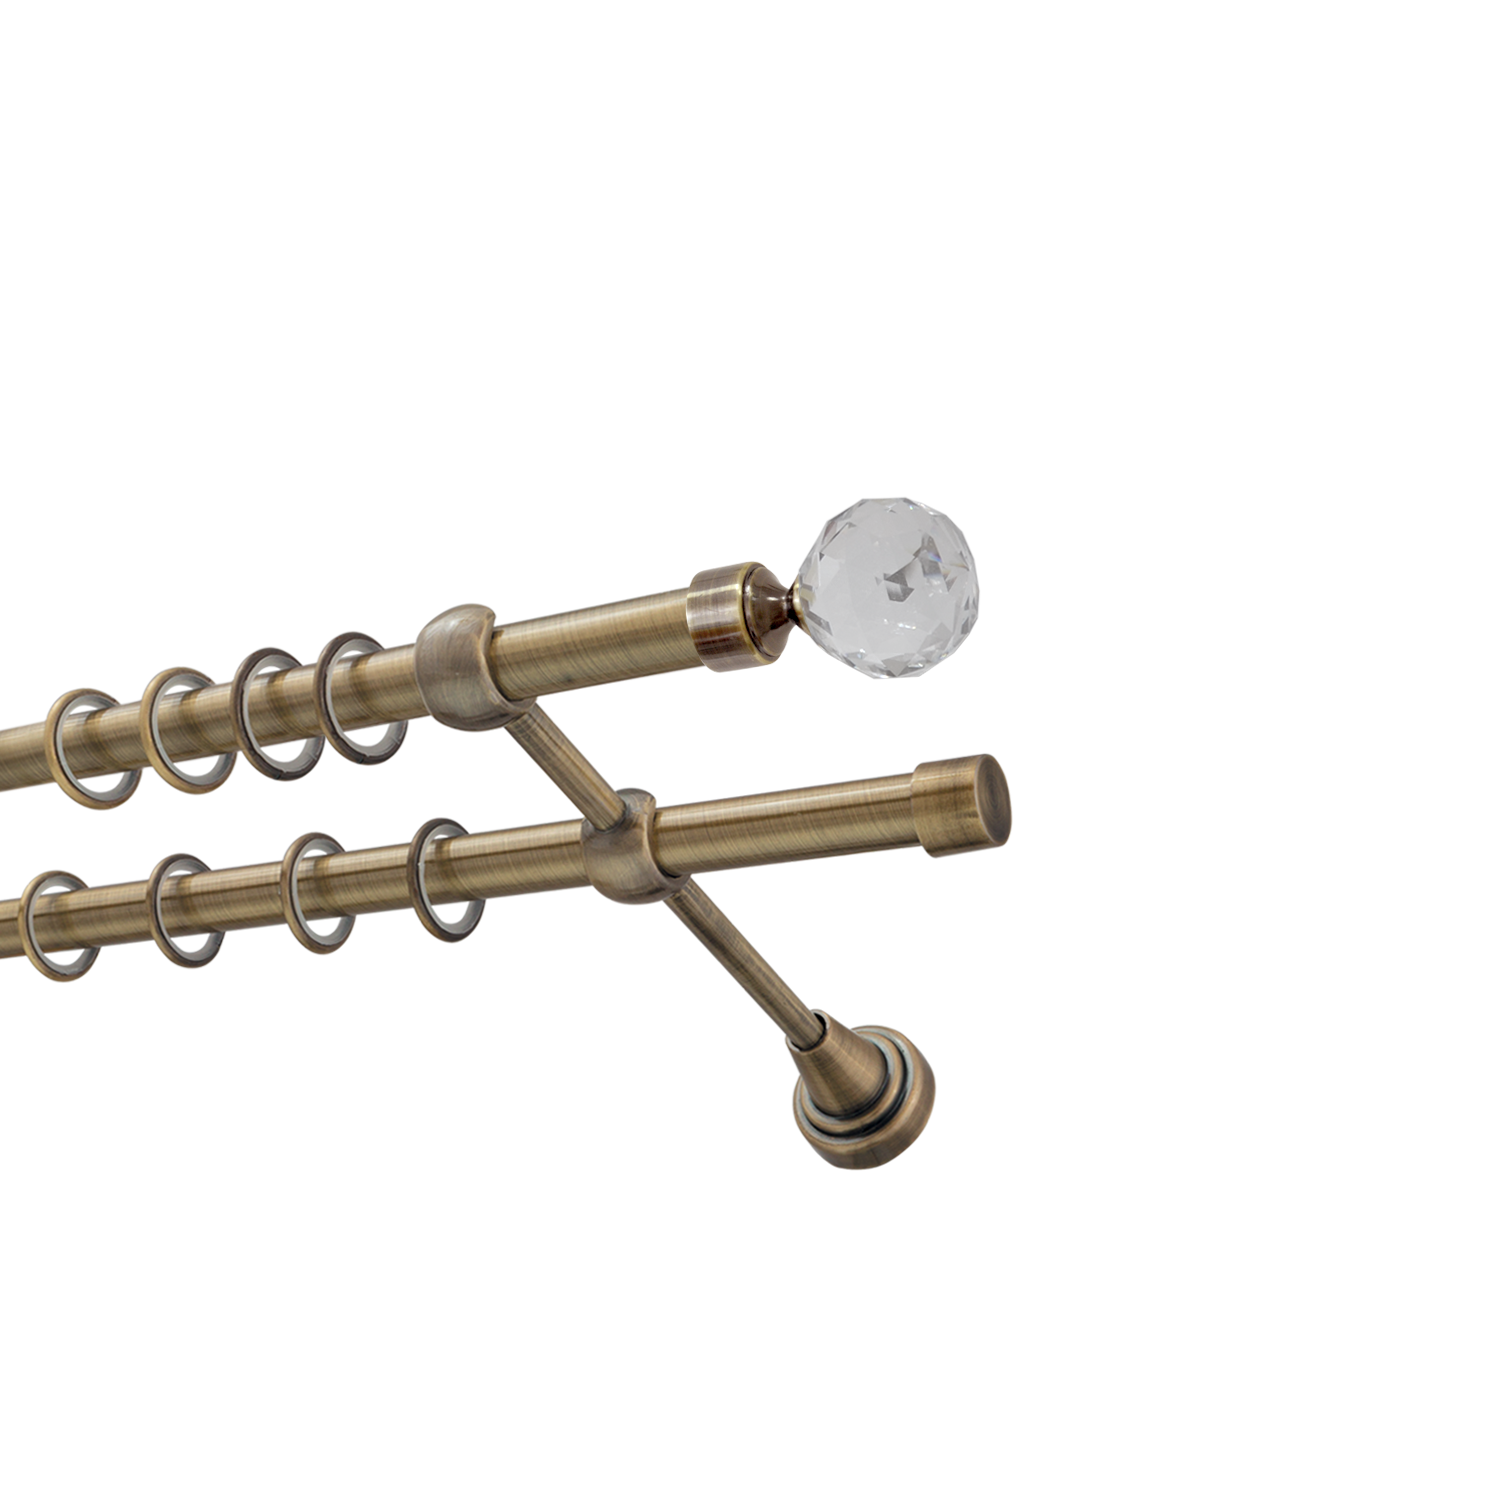 Металлический карниз для штор Карат, двухрядный 16/16 мм, бронза, гладкая штанга, длина 200 см - фото Wikidecor.ru